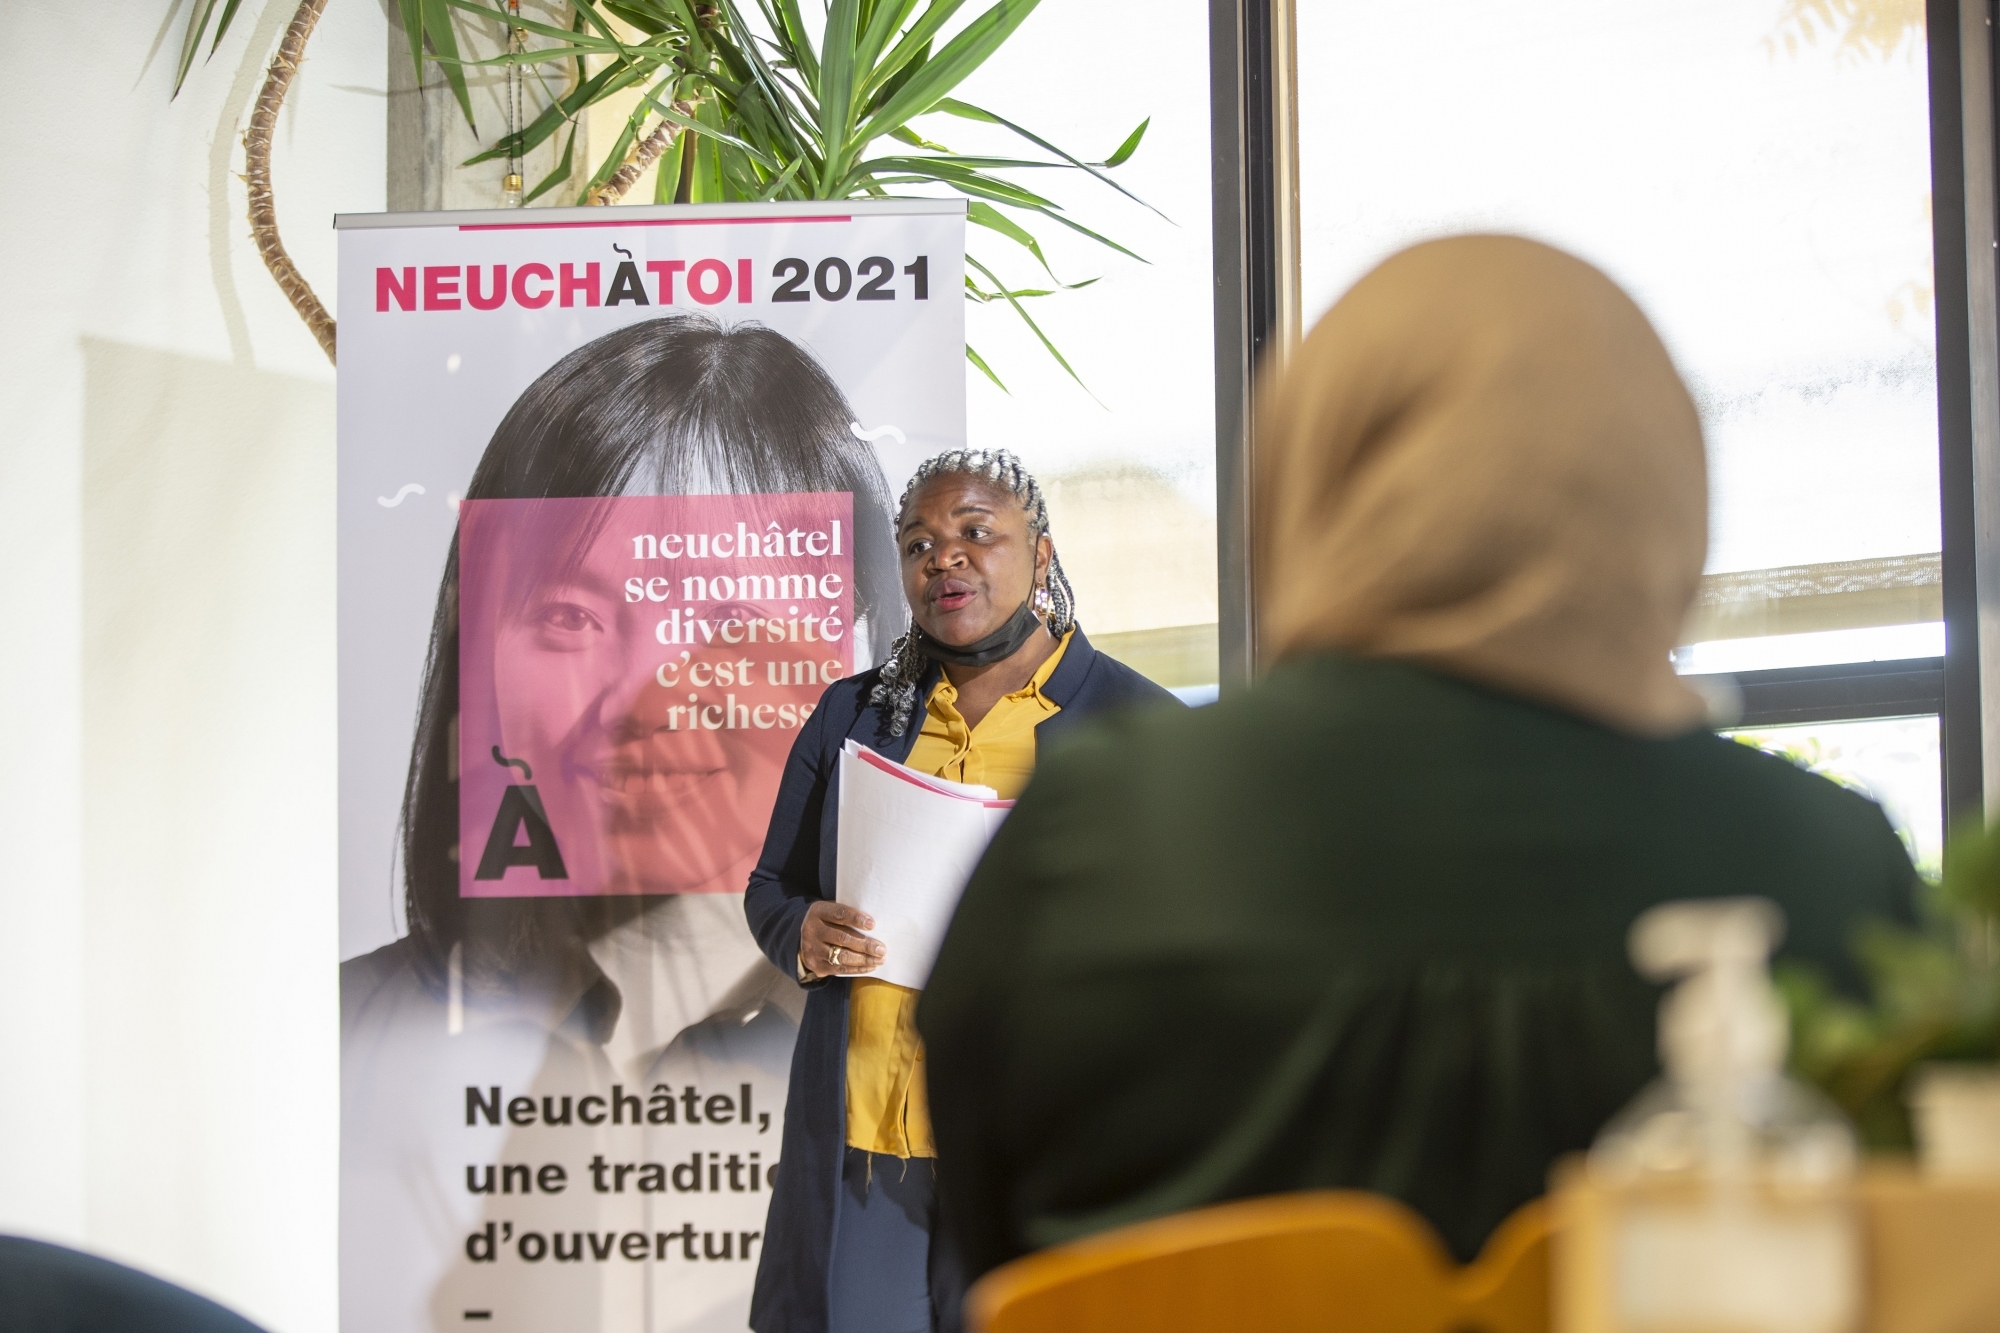 La cinquième édition de NeuchàToi a été lancée ce lundi 30 août.